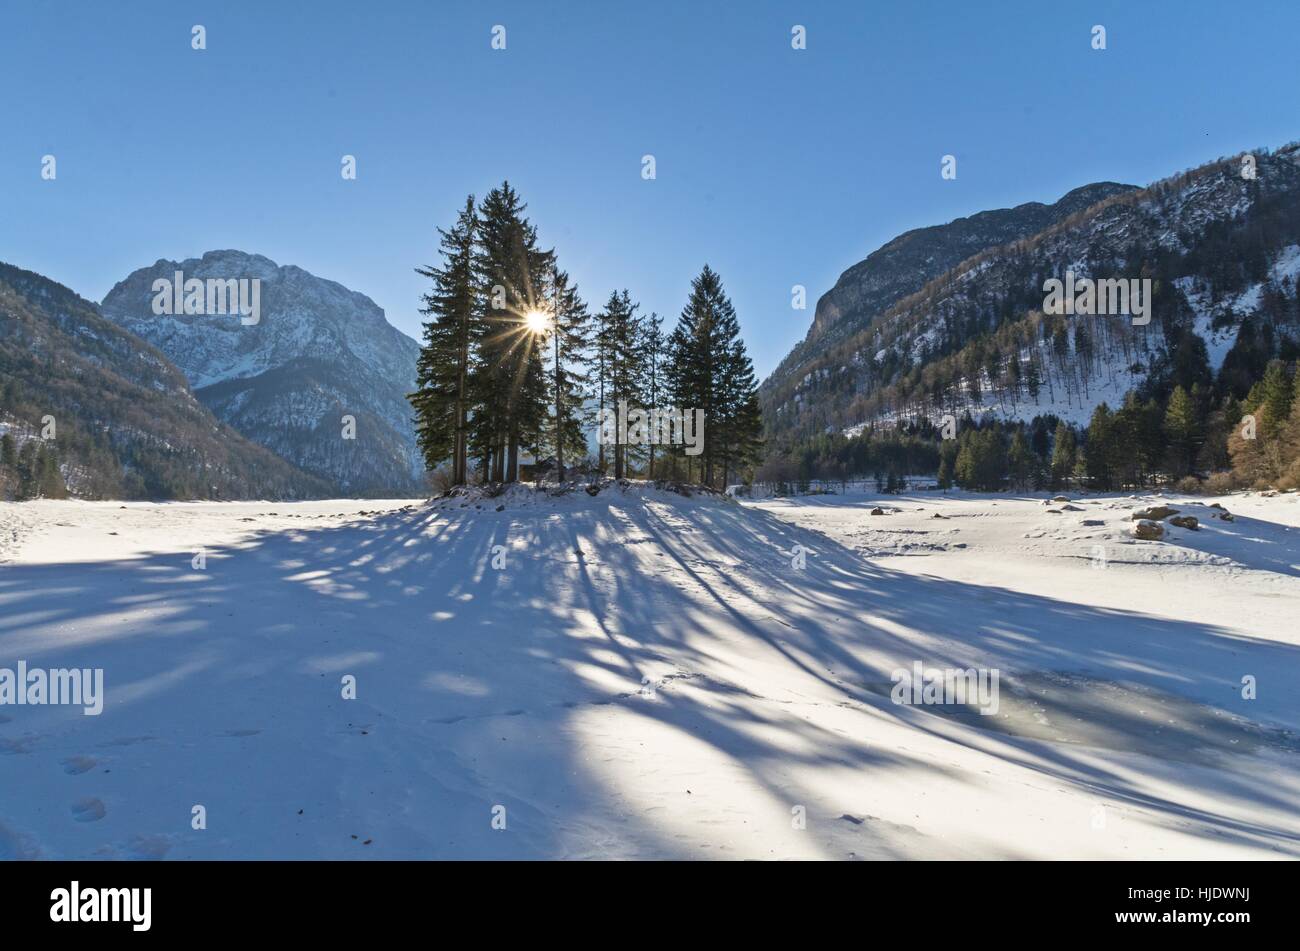 The alpine lake of Predil (Raibl) in winter Stock Photo